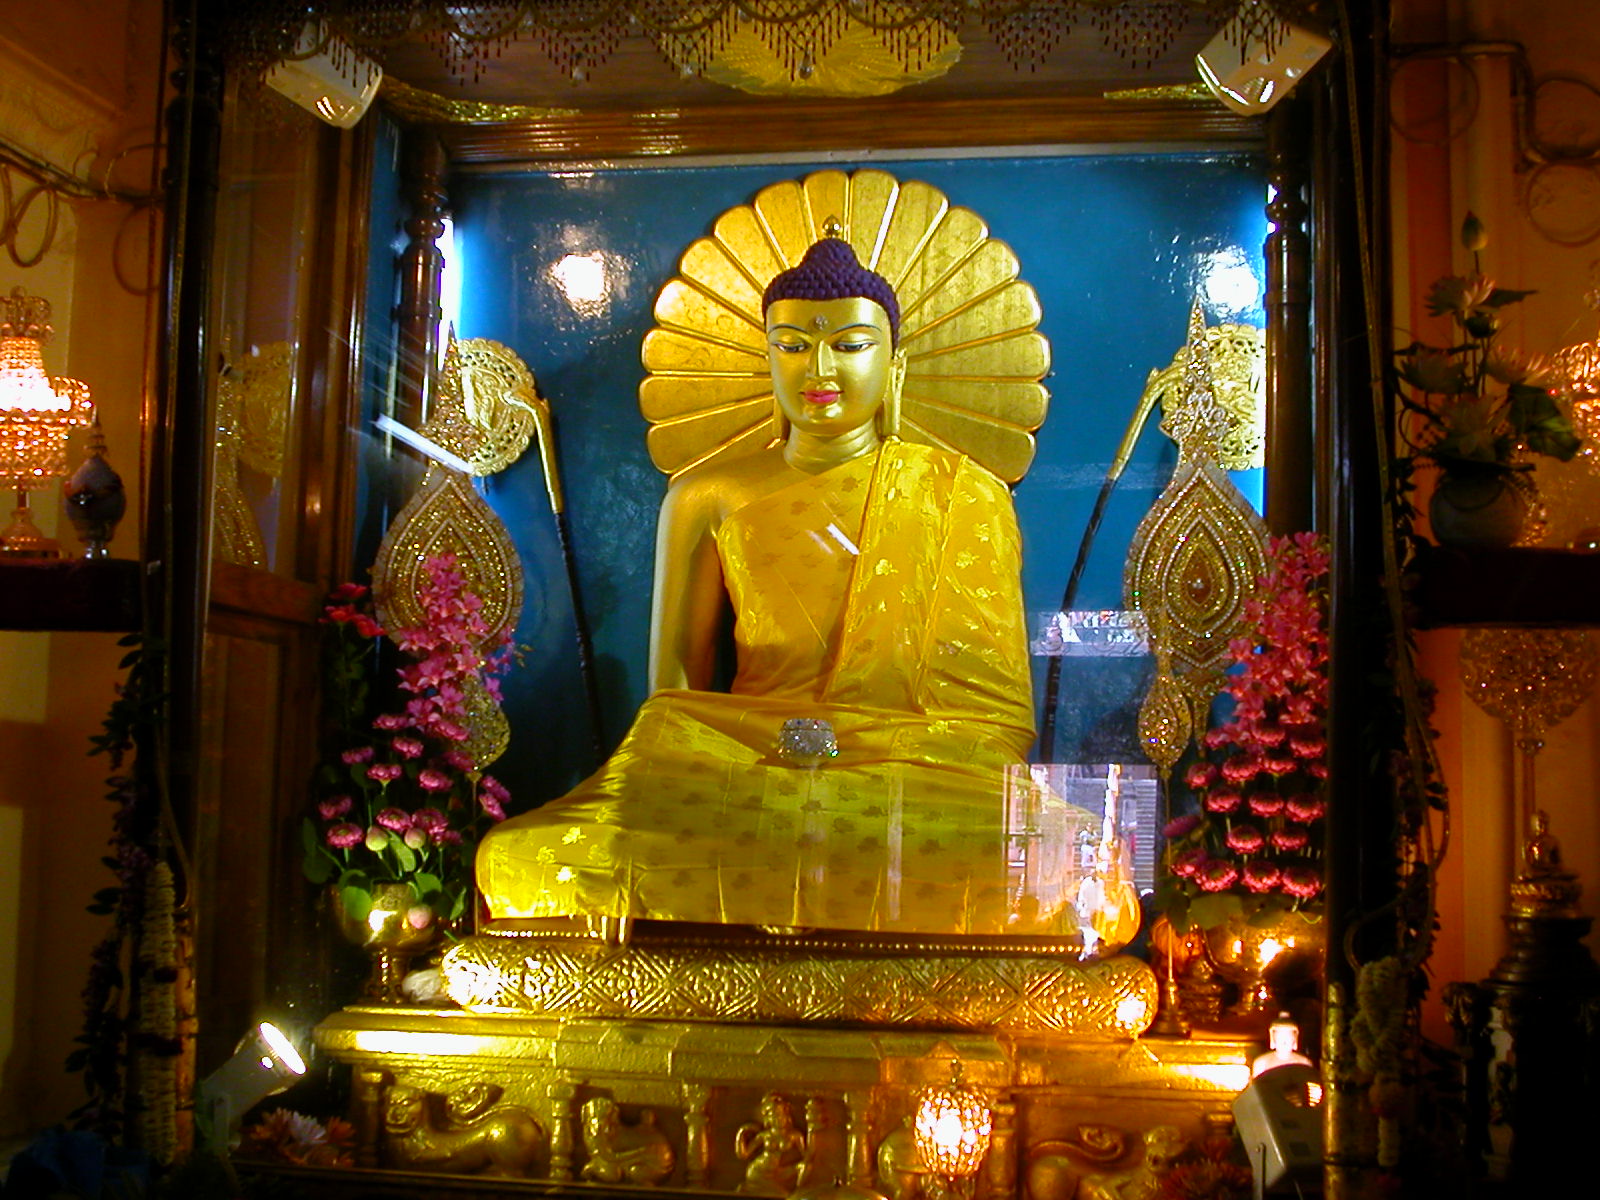 http://3.bp.blogspot.com/-bFDM3srVv24/UB3goHjtrEI/AAAAAAAAIeE/D0d4l1JDlz0/s1600/Mahabodhi-Temple-central-shrine-785317.JPG